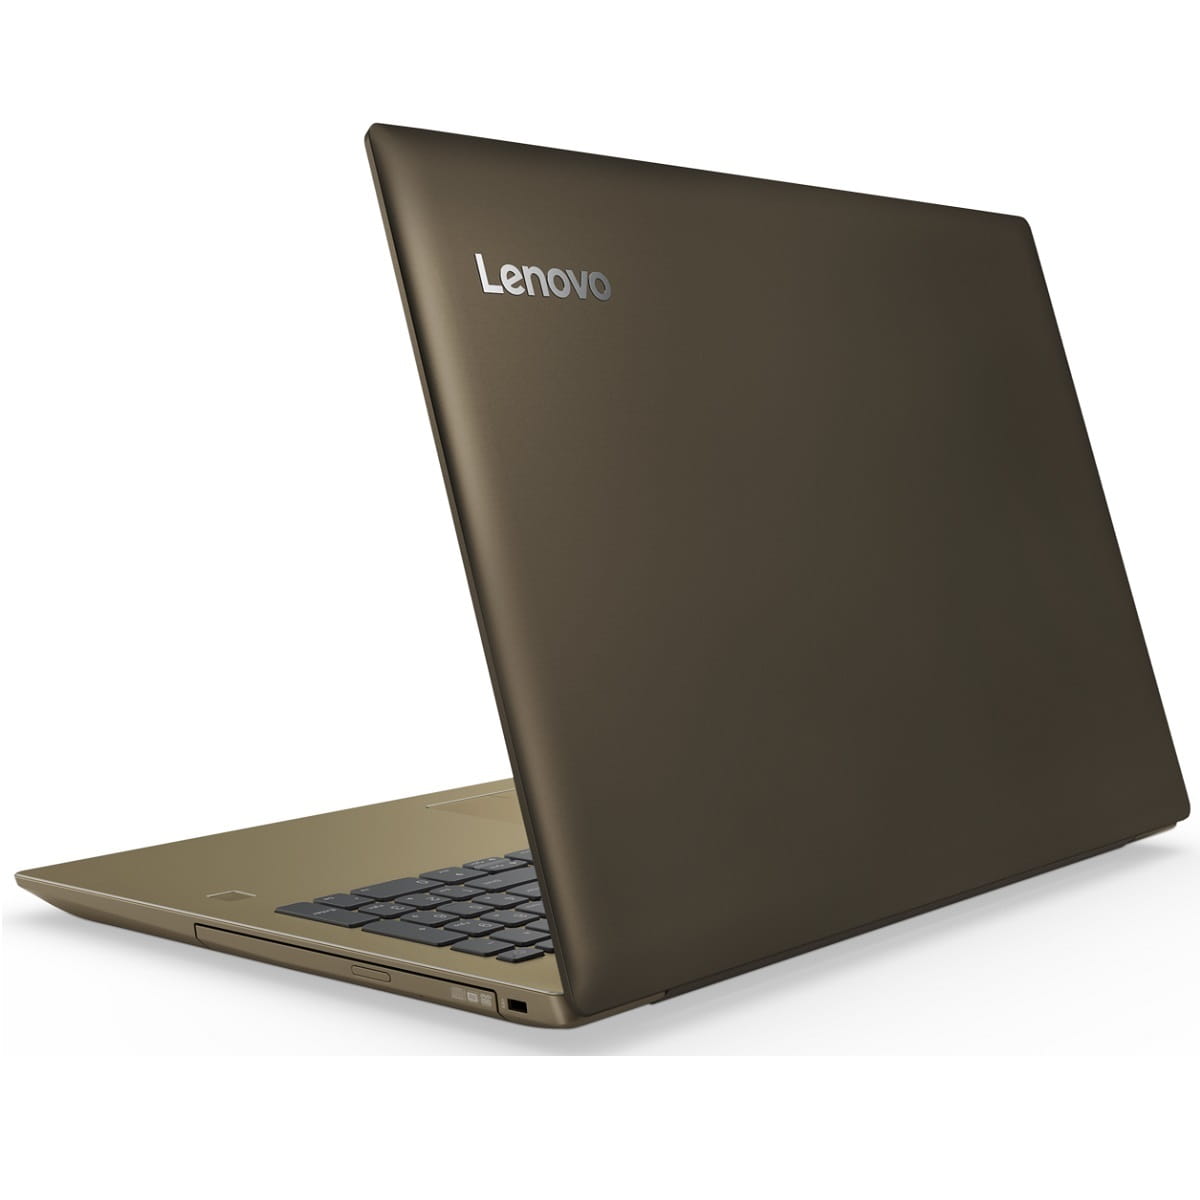 Laptop Lenovo IdeaPad 520-15IKBR / 15.6" IPS FullHD / i7-8550U / 8Gb DDR4 / 128Gb SSD + 1.0TB HDD / GeForce MX150 2Gb DDR5 / DOS /